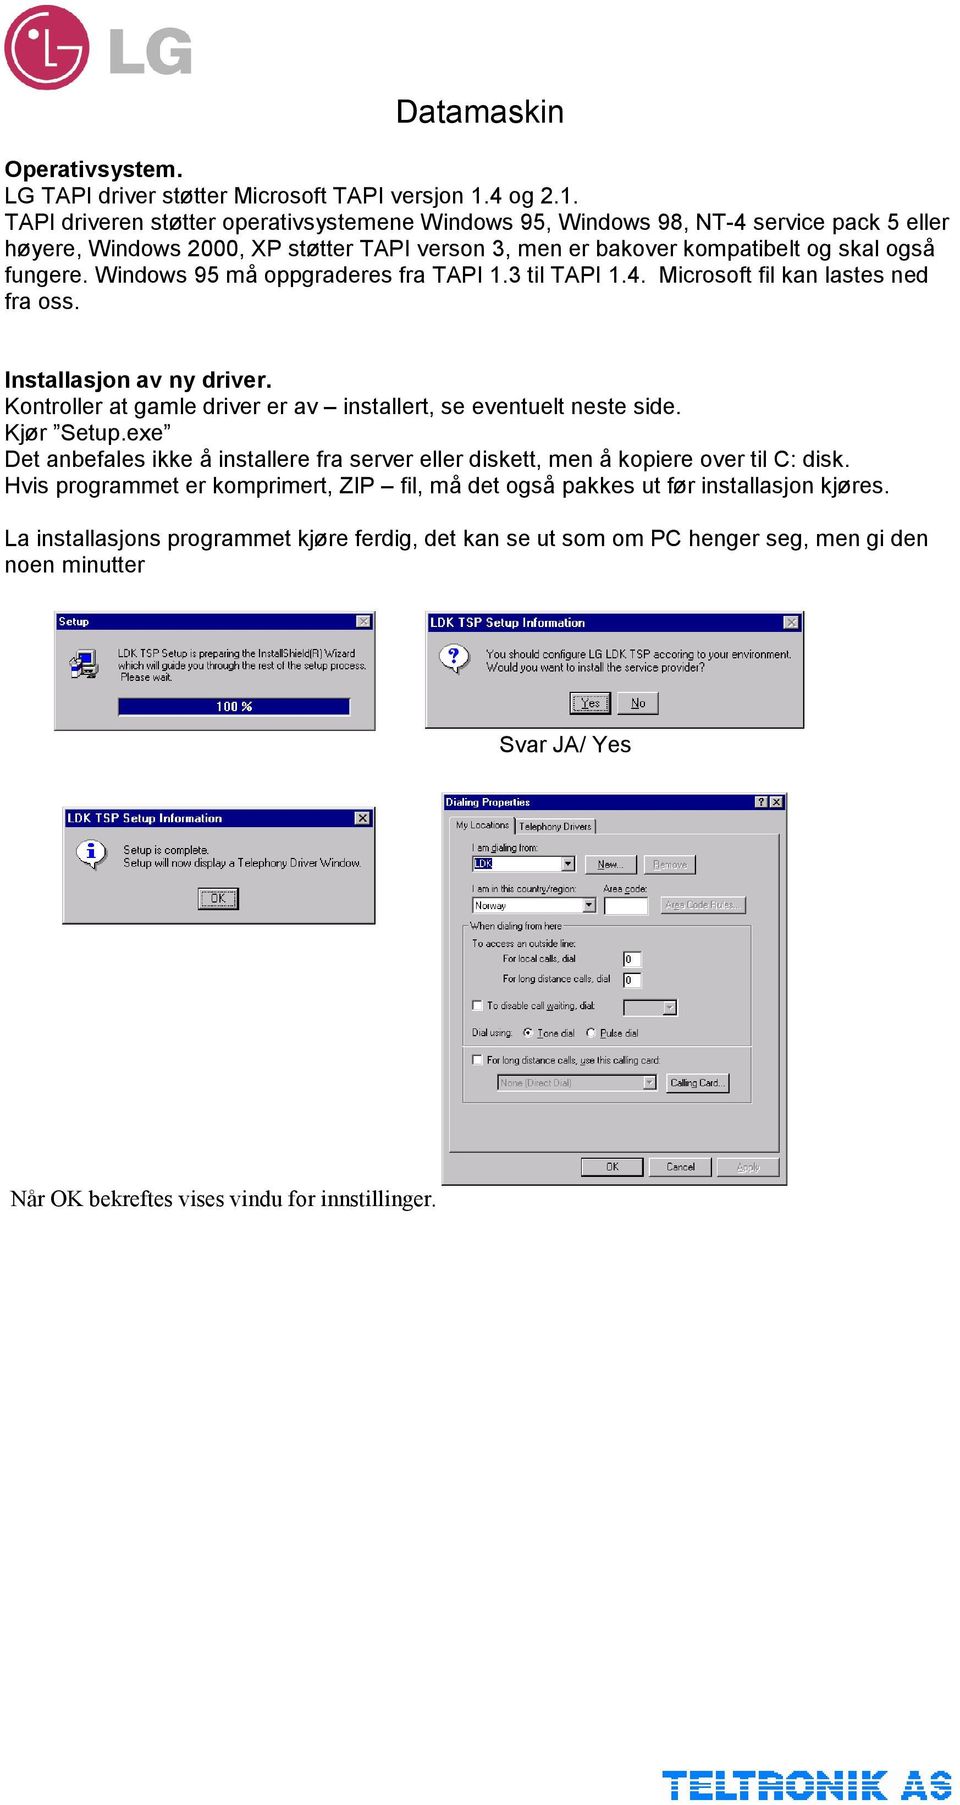 Windows 95 må oppgraderes fra TAPI 1.3 til TAPI 1.4. Microsoft fil kan lastes ned fra oss. Installasjon av ny driver. Kontroller at gamle driver er av installert, se eventuelt neste side. Kjør Setup.